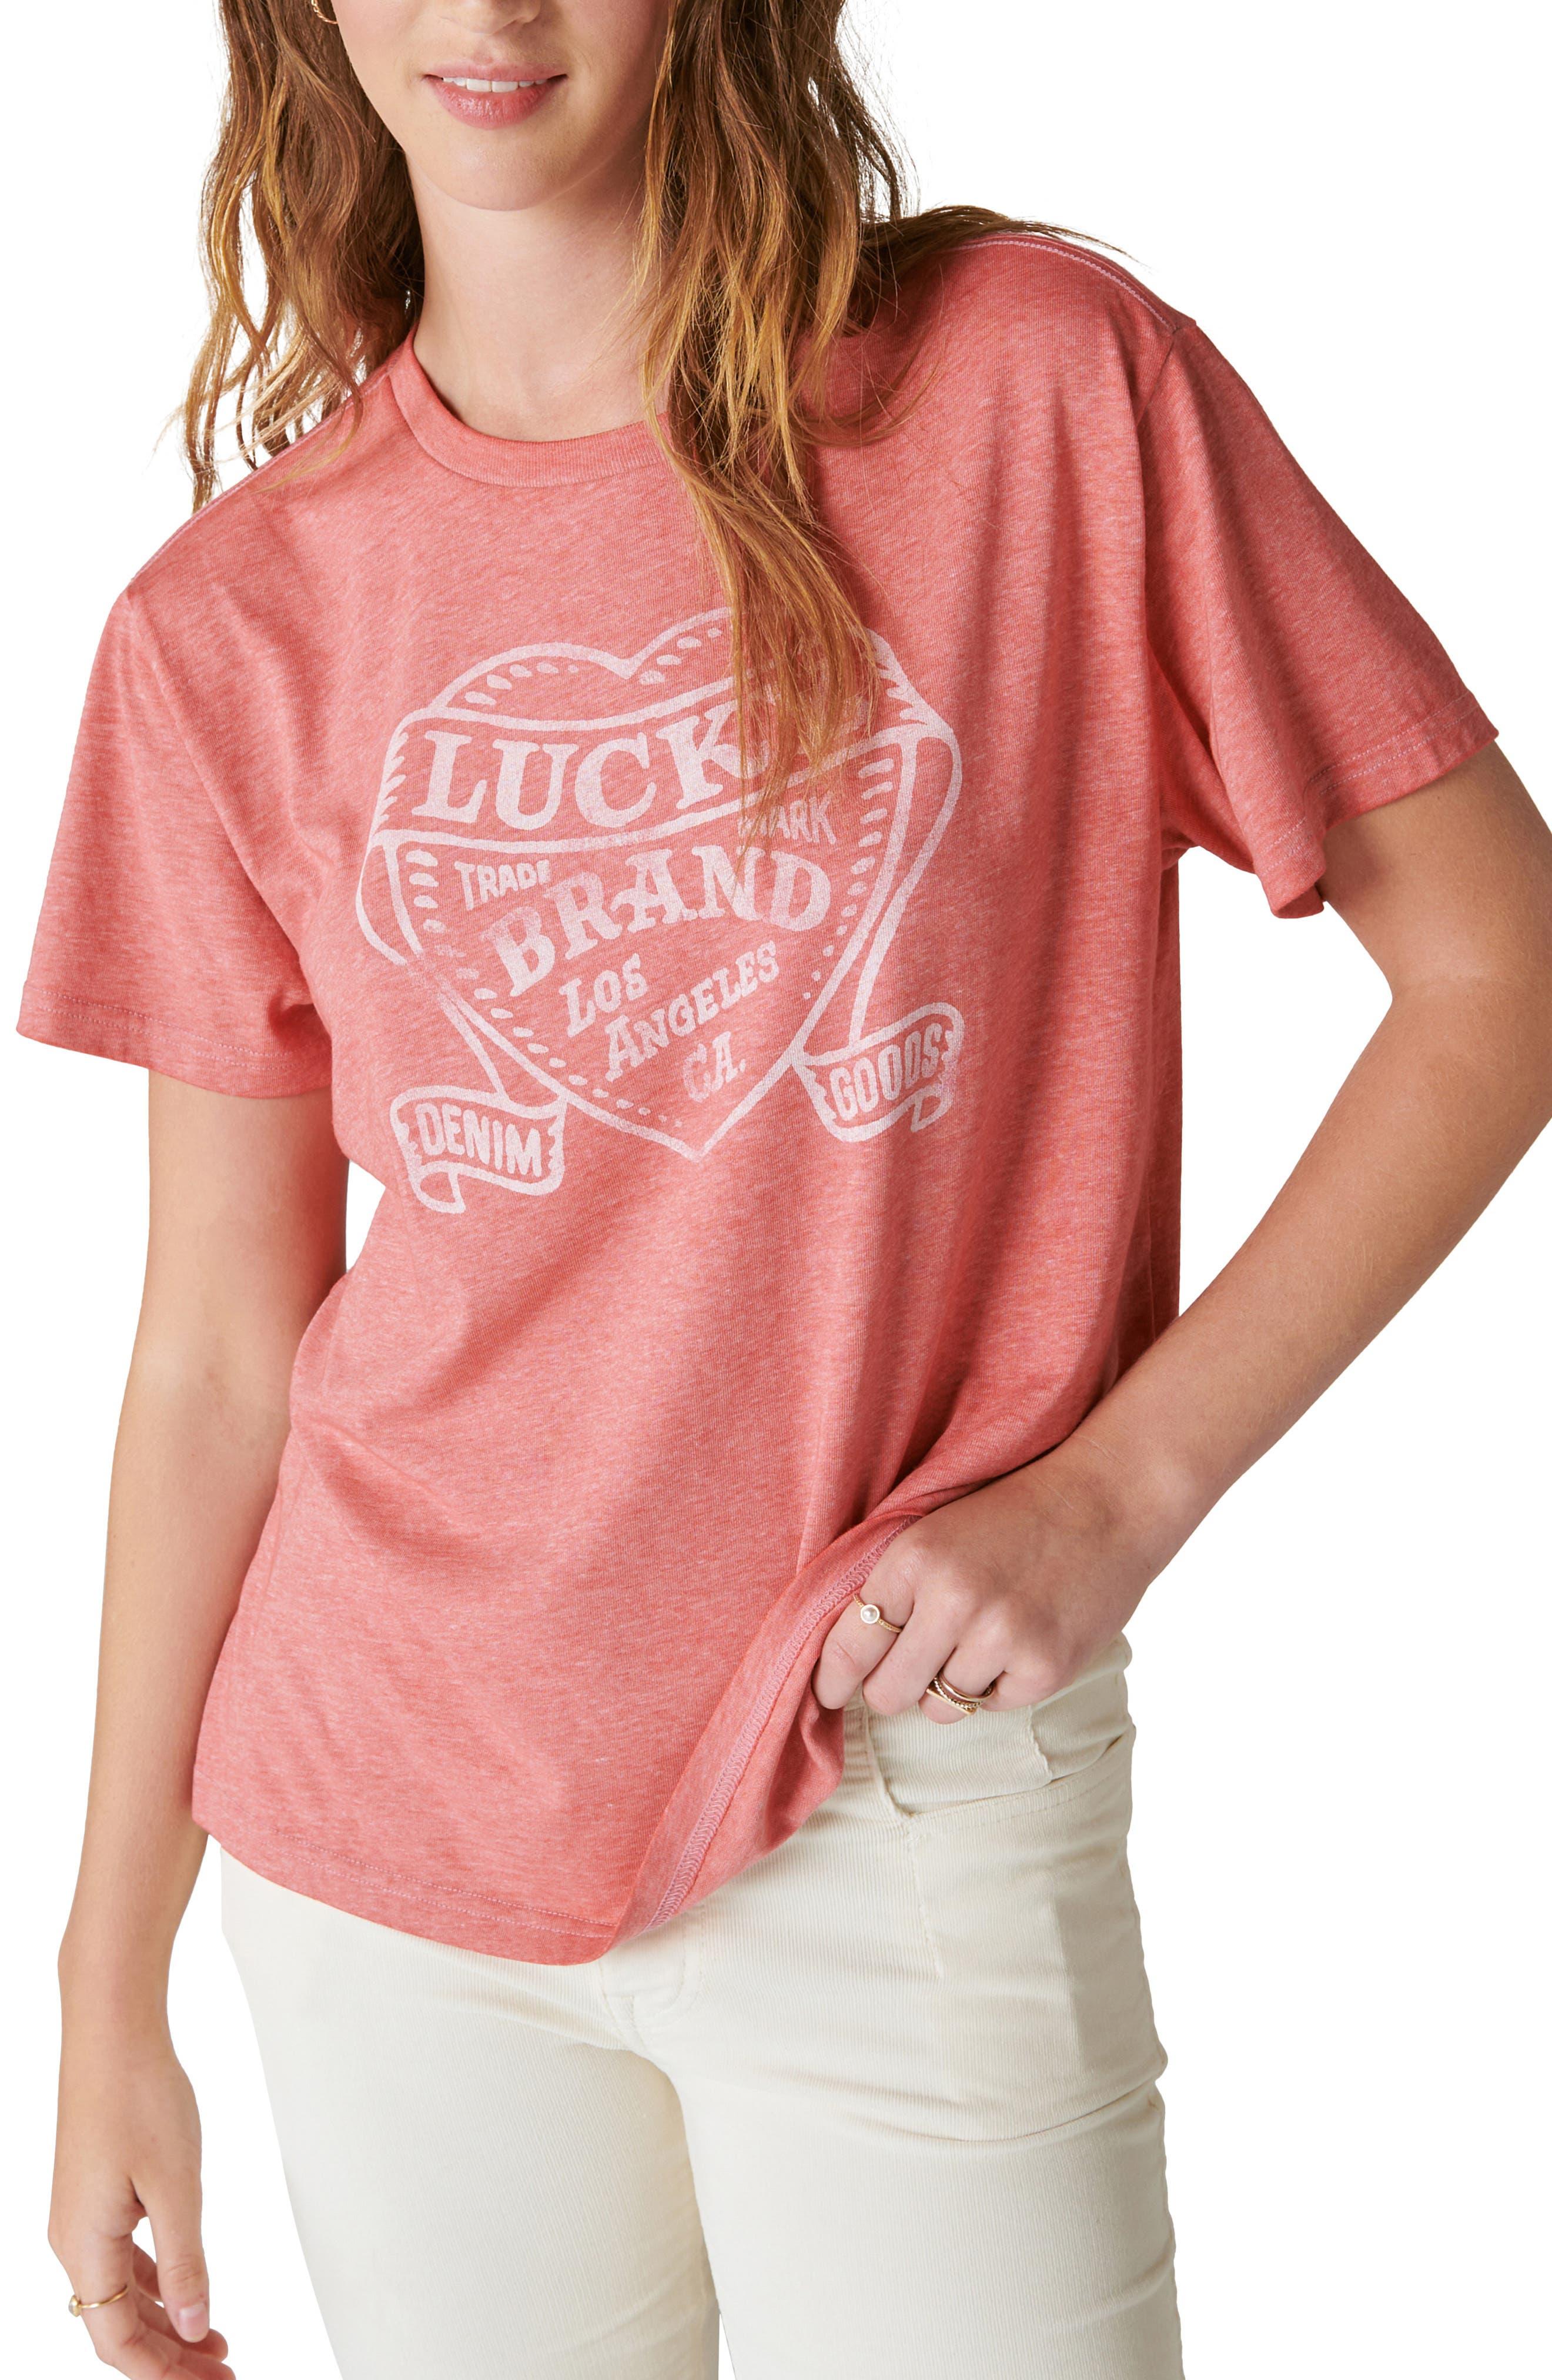 https://cdna.lystit.com/photos/nordstrom/d78b1173/lucky-brand-Baked-Apple-Lucky-Heart-Graphic-T-shirt.jpeg